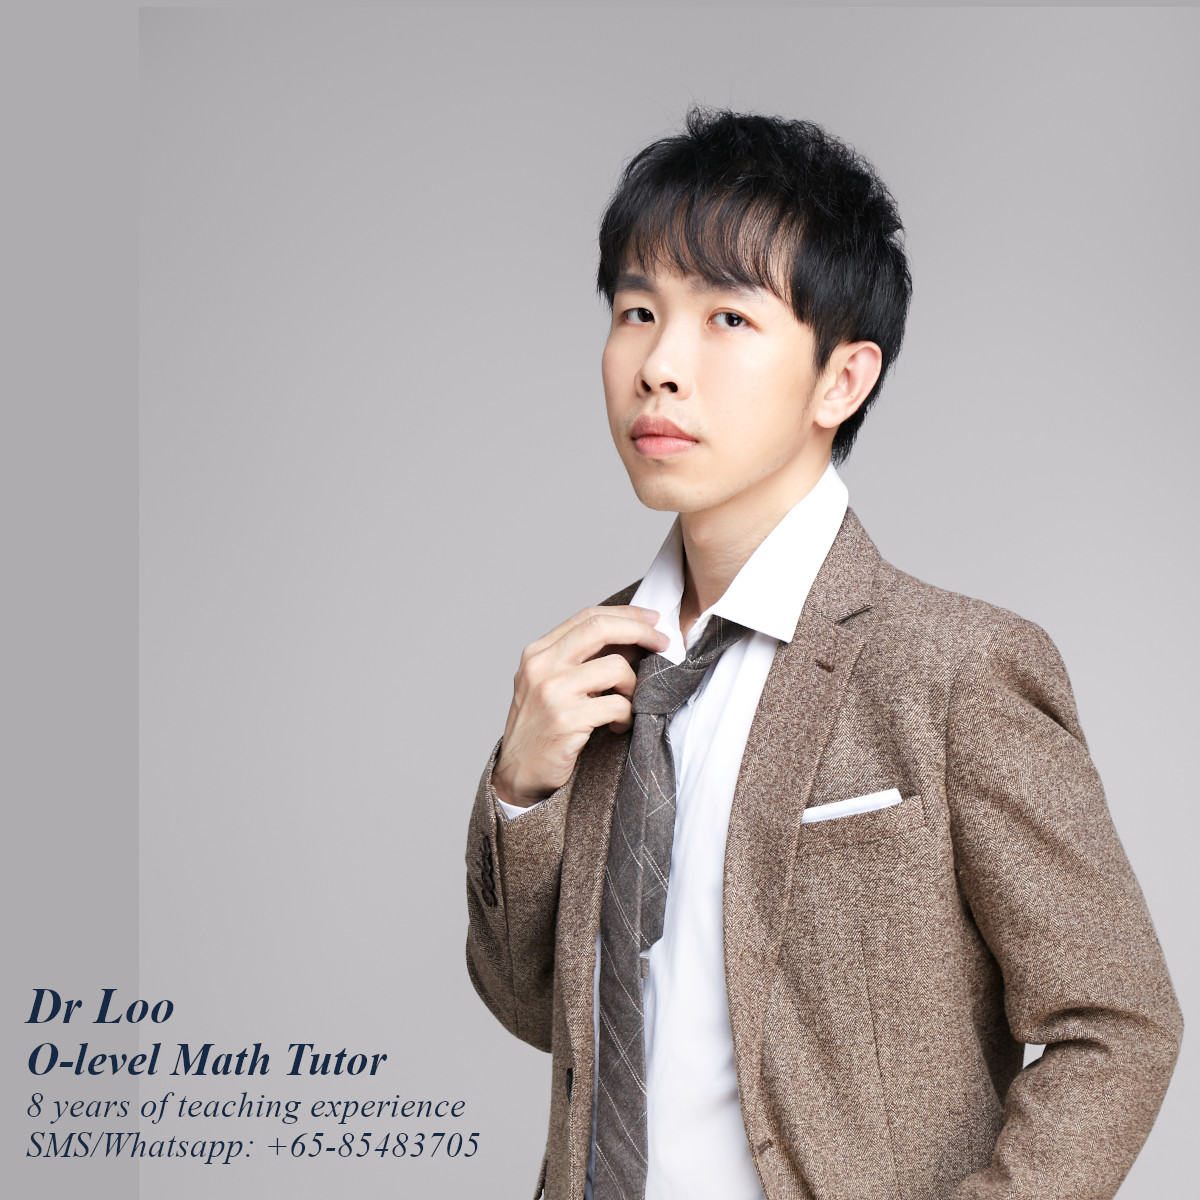 O-level Math Tutor in Singapore